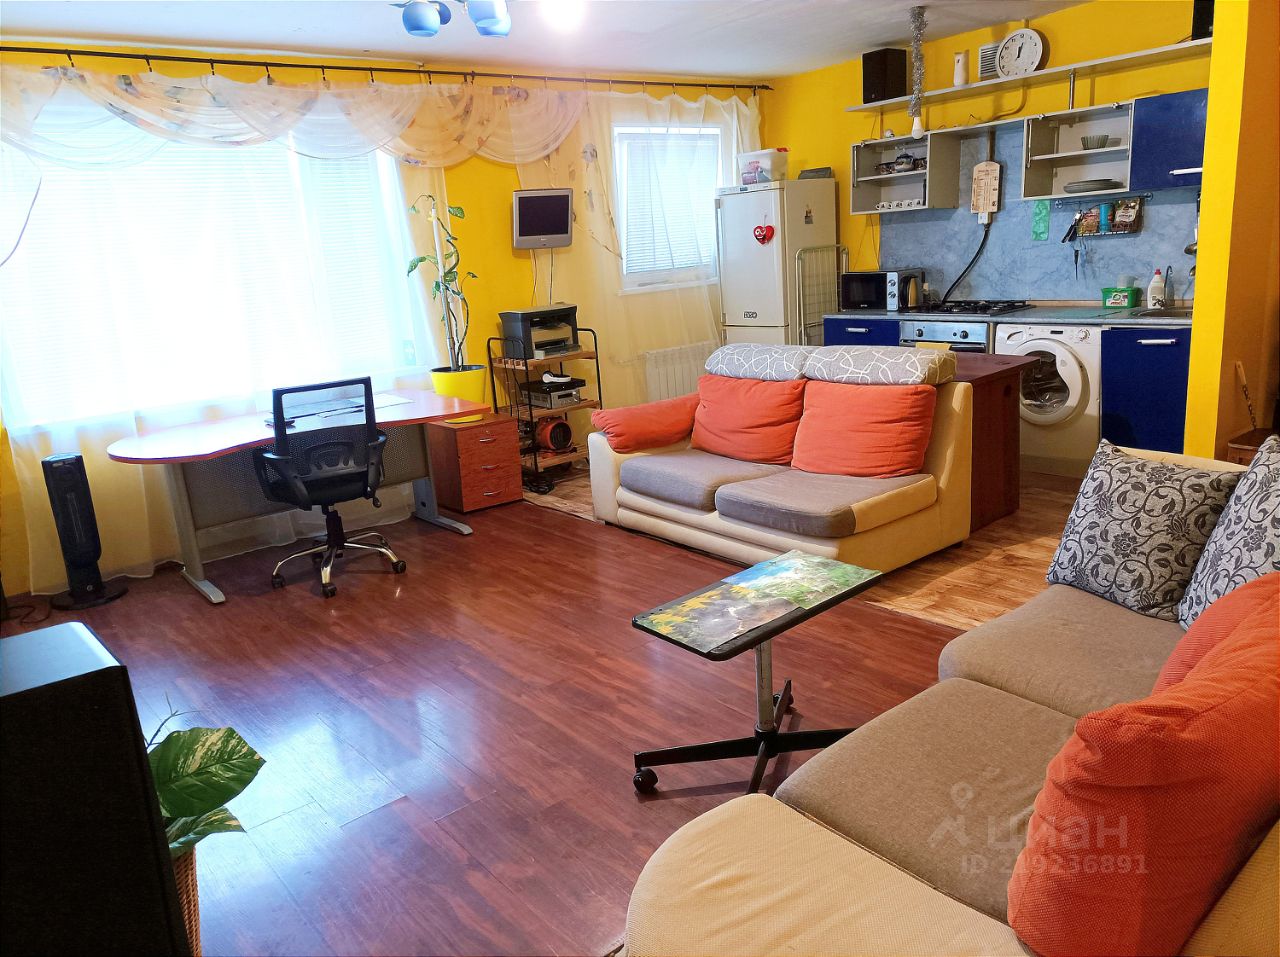 Уютная 2-комнатная квартира в Екатеринбурге, 63 кв.м, кухня 16 кв.м, жилая 30 кв.м, 1 этаж. Современная мебель, светлая гостиная, рабочая зона.